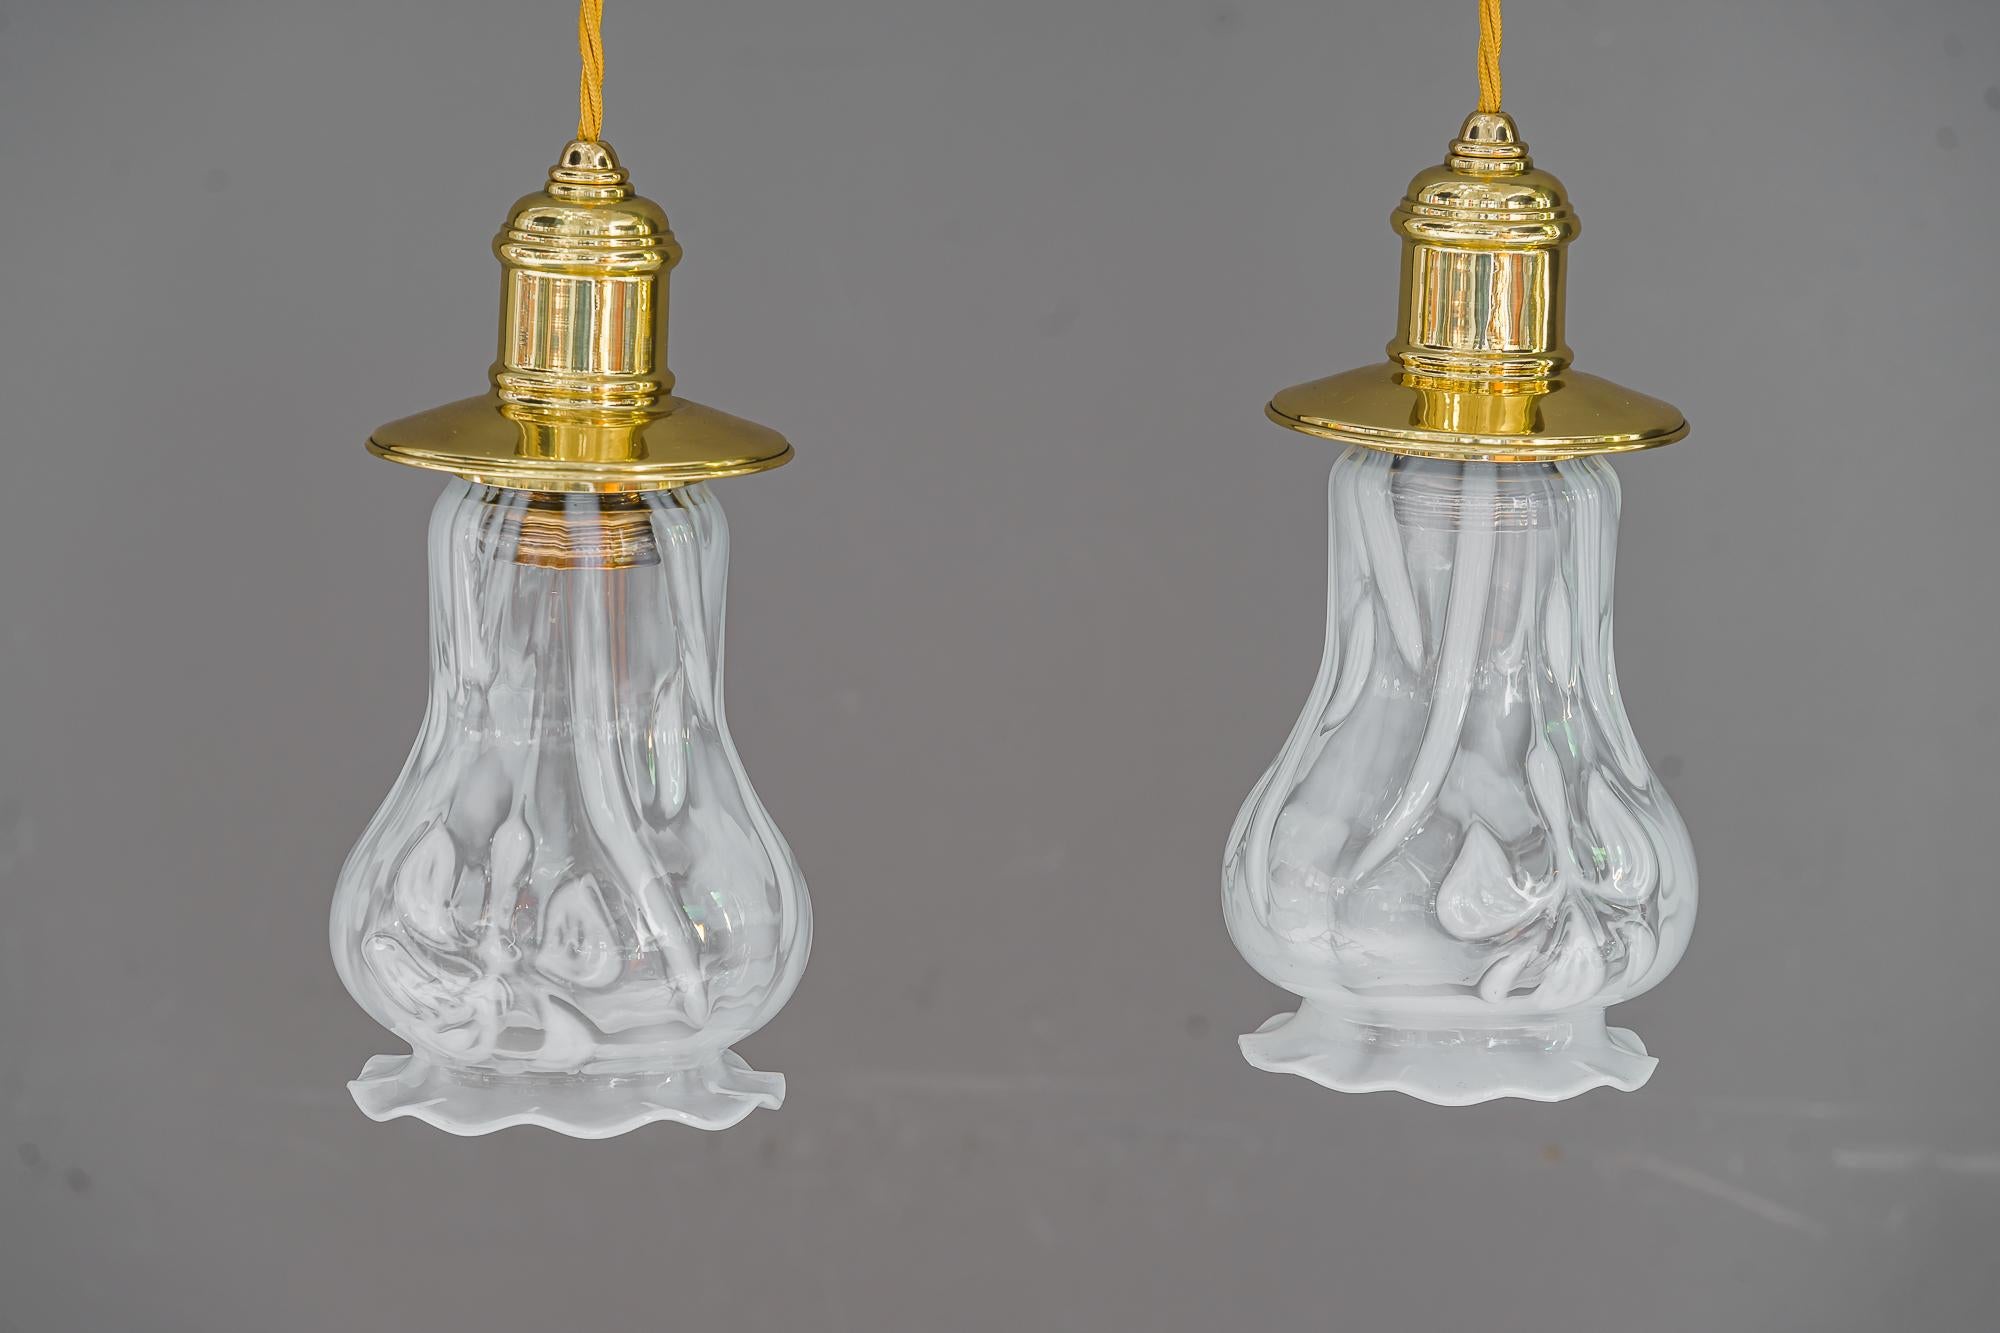 2 pendentifs Art Déco viennois vers 1920 avec abat-jour en verre opalin.
Laiton poli et émaillé au four.
Abat-jour en verre opalin d'origine.